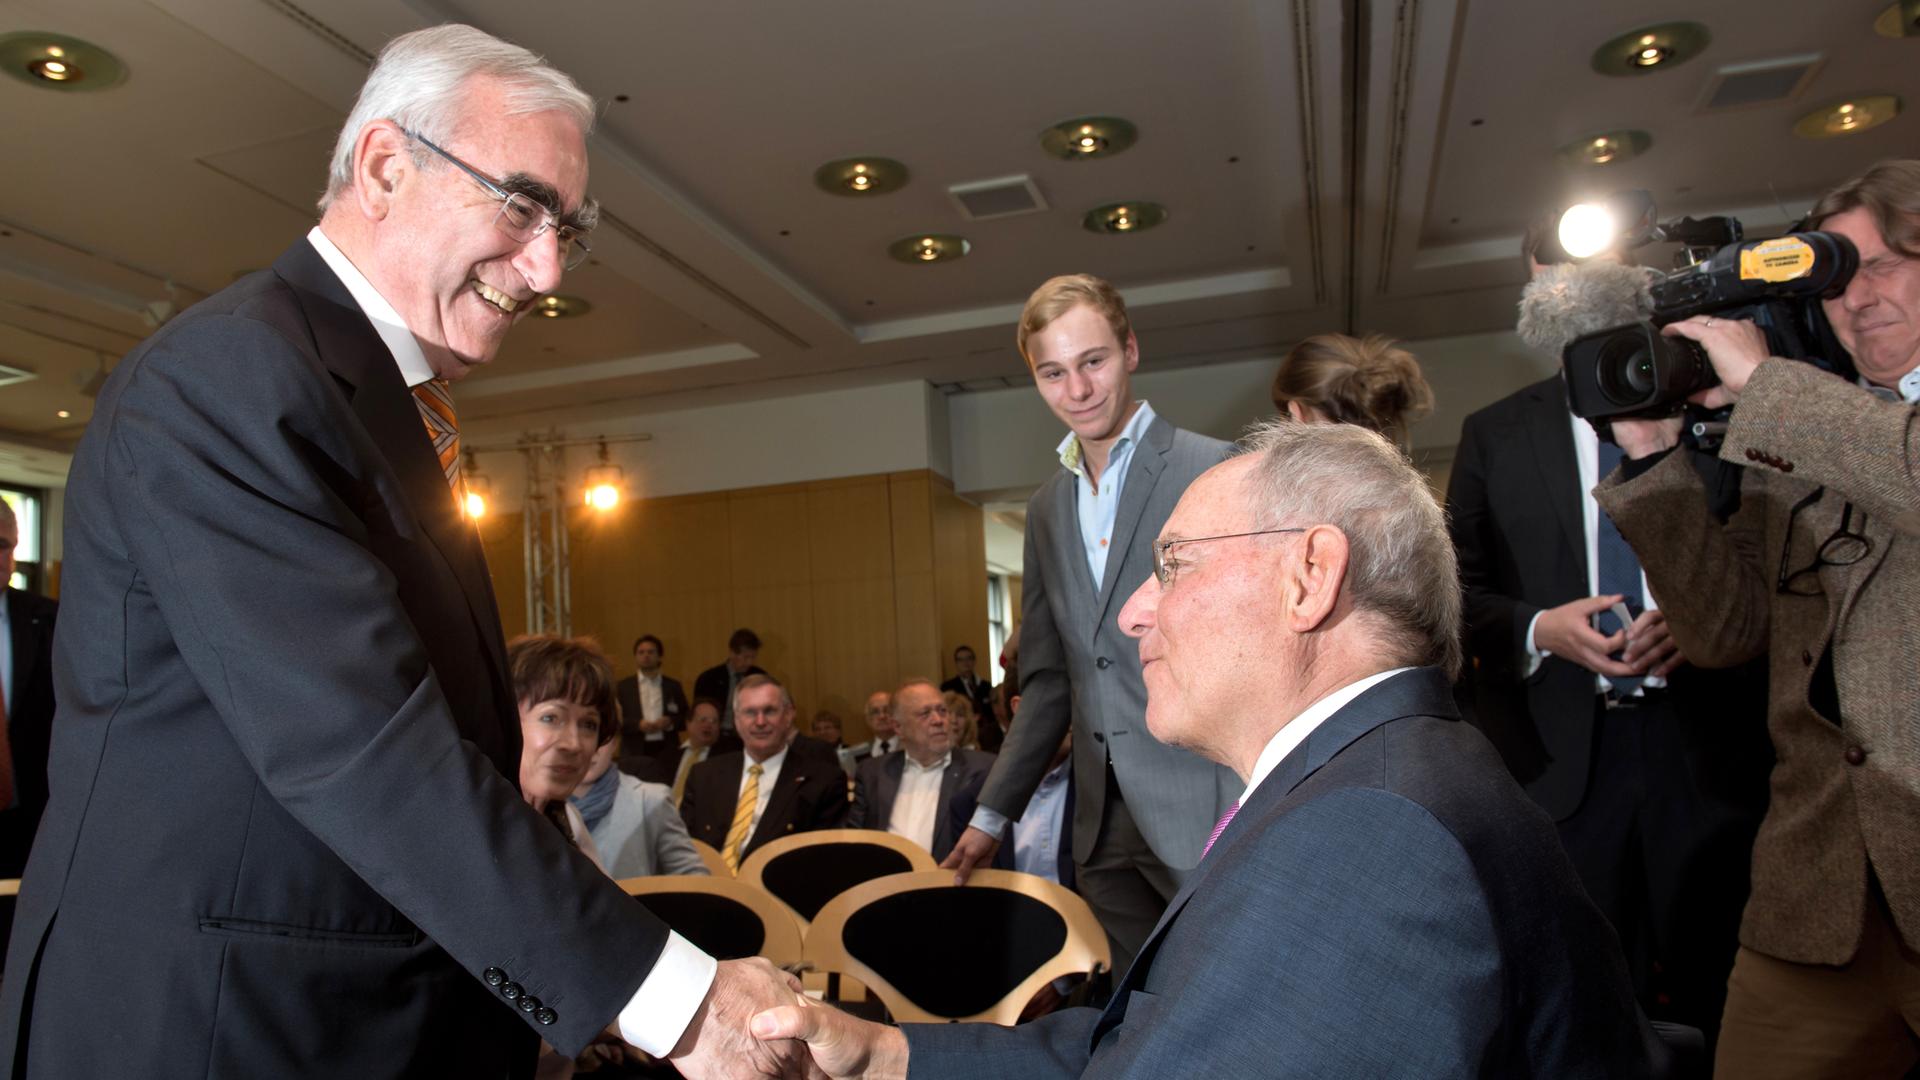 Der Bundesfinanzminister Wolfgang Schäuble (r, CDU) gratuliert am 13.05.2014 in München (Bayern), während eines Empfangs zum 75. Geburtstag von Ex-CSU-Chef Waigel, Theo Waigel (l). 